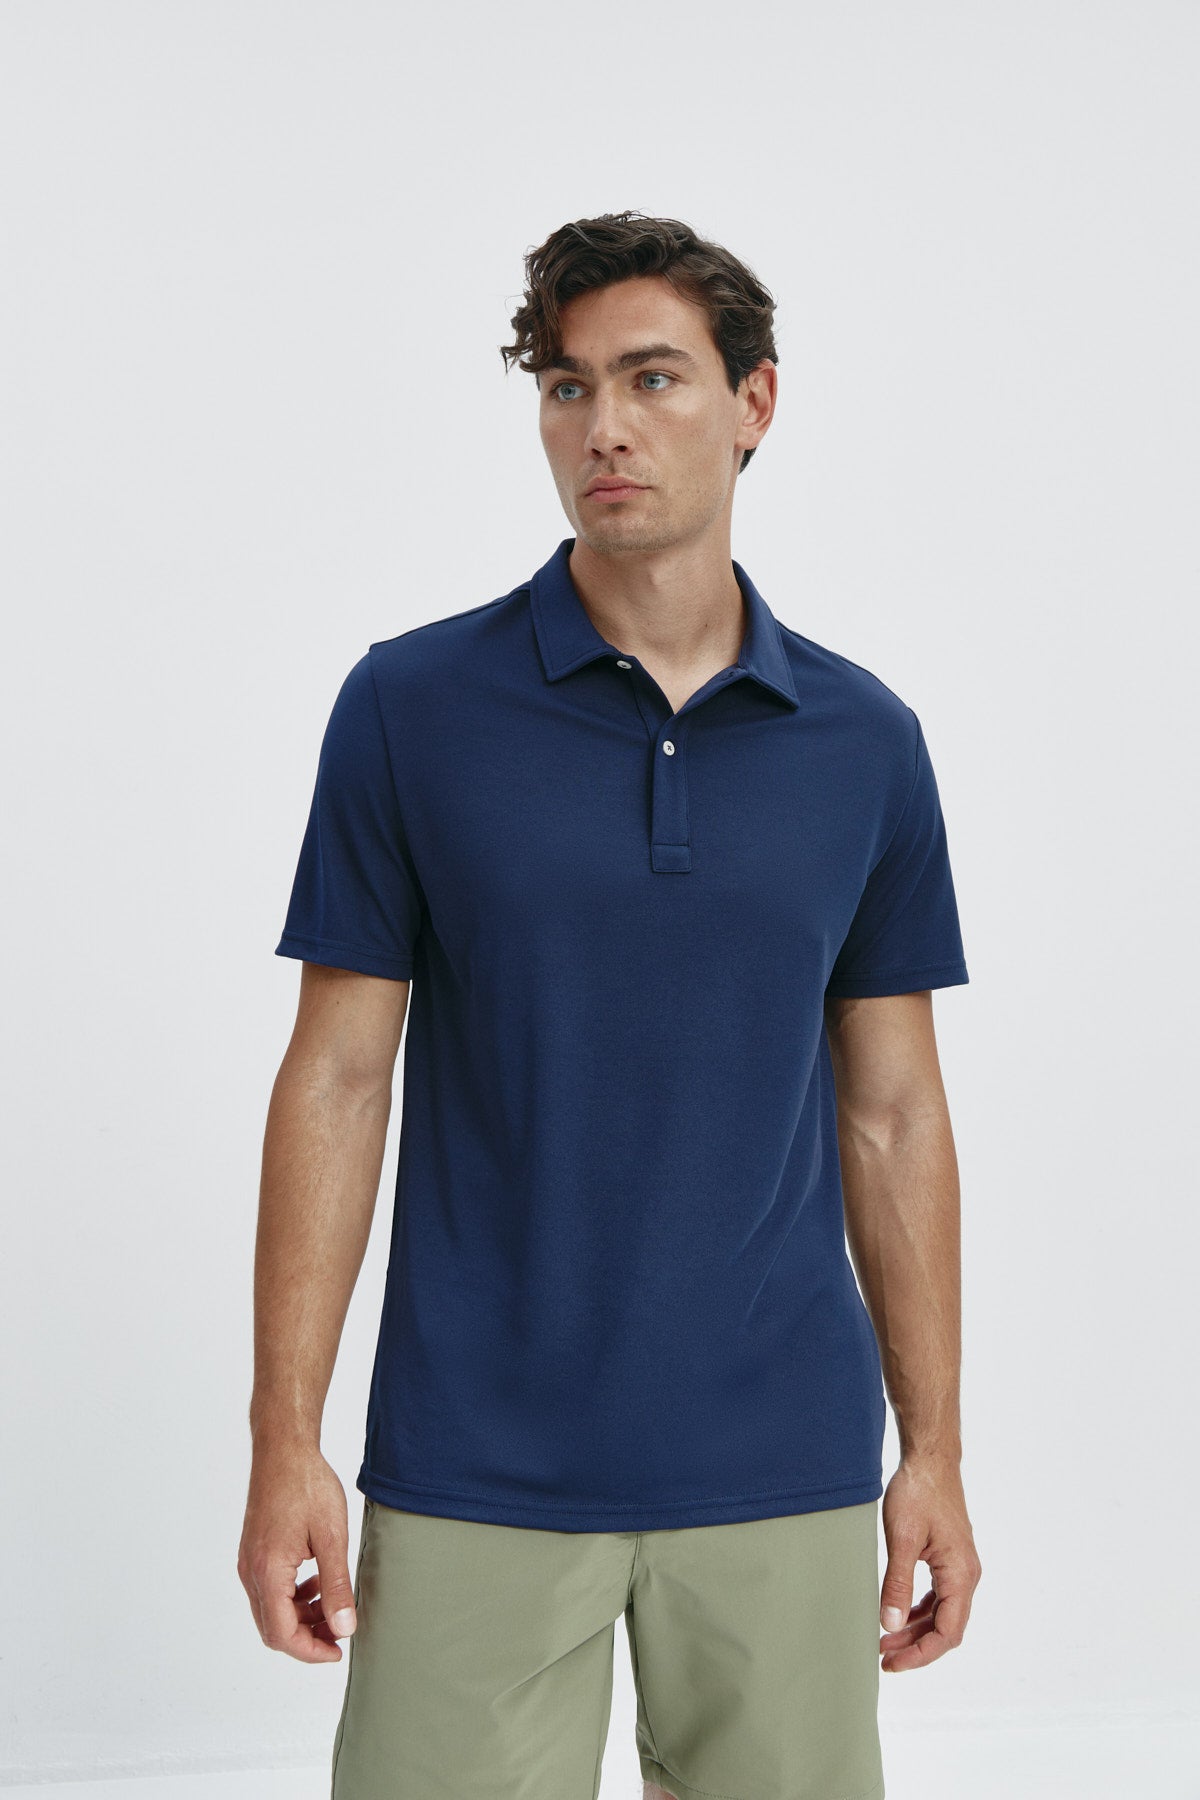 Polo manga corta para hombre en azul marino de Sepiia, versatilidad y elegancia en una prenda clásica. Foto de frente.